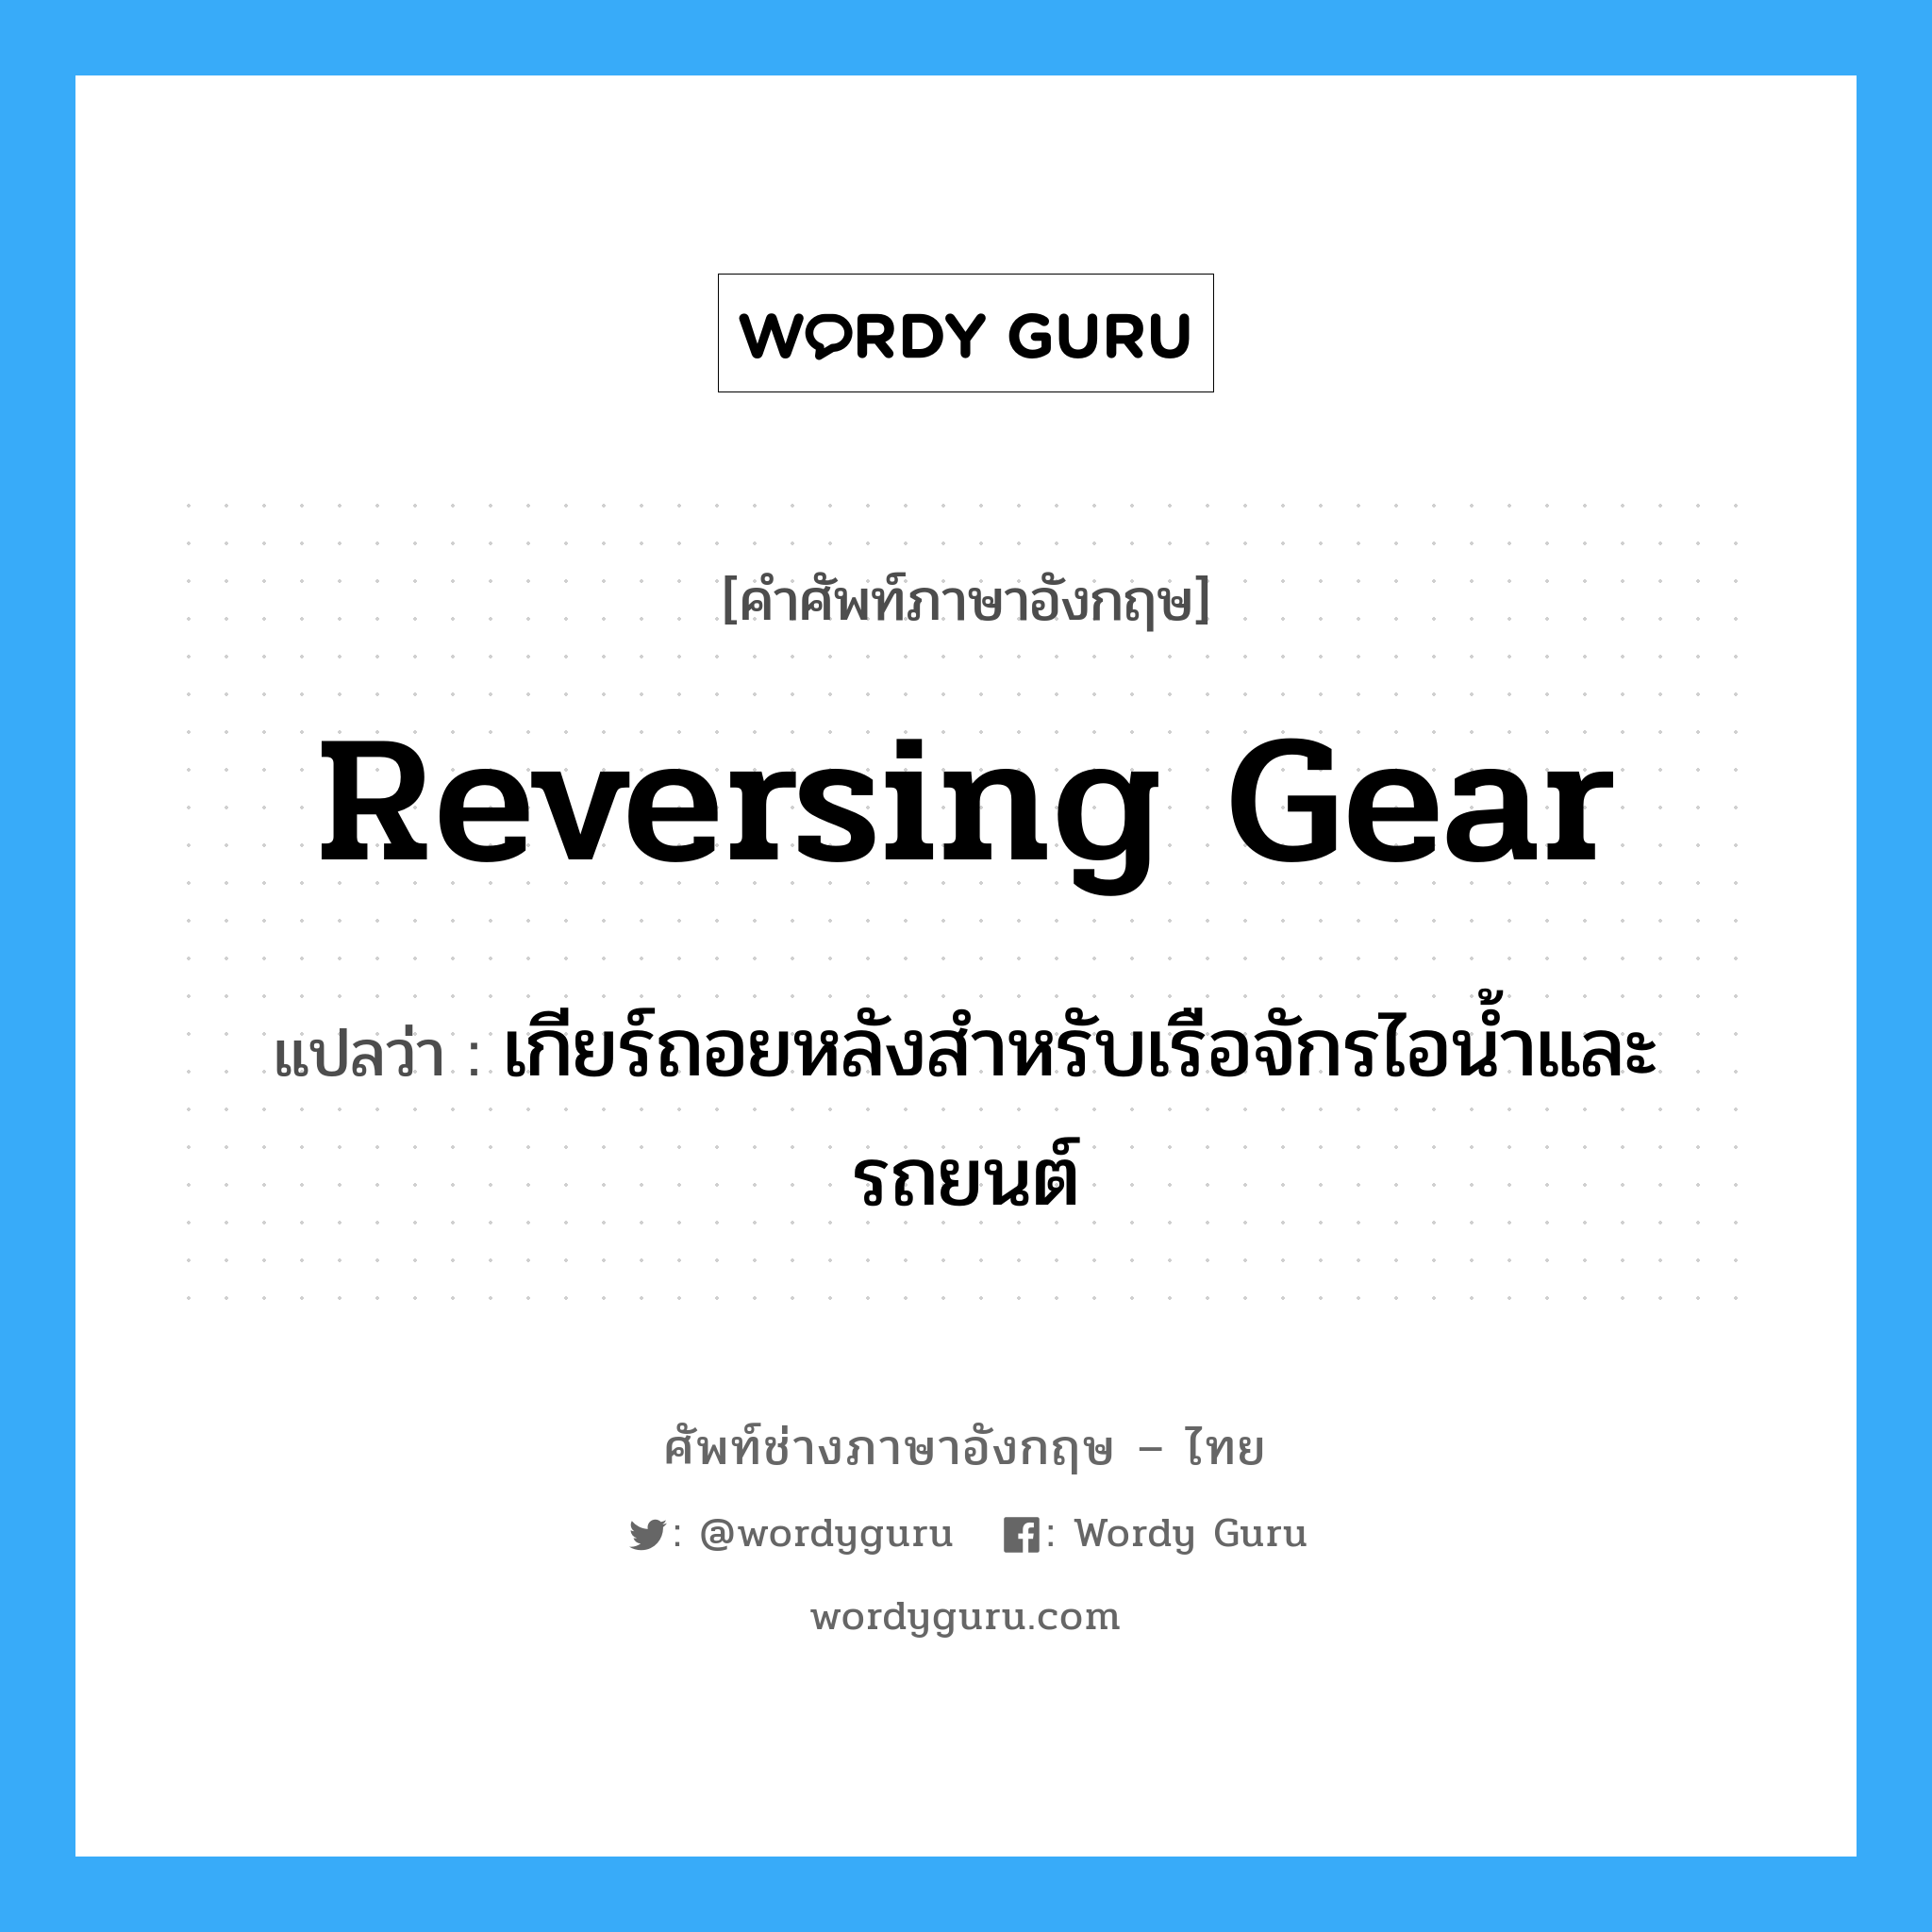 reversing gear แปลว่า?, คำศัพท์ช่างภาษาอังกฤษ - ไทย reversing gear คำศัพท์ภาษาอังกฤษ reversing gear แปลว่า เกียร์ถอยหลังสำหรับเรือจักรไอน้ำและรถยนต์